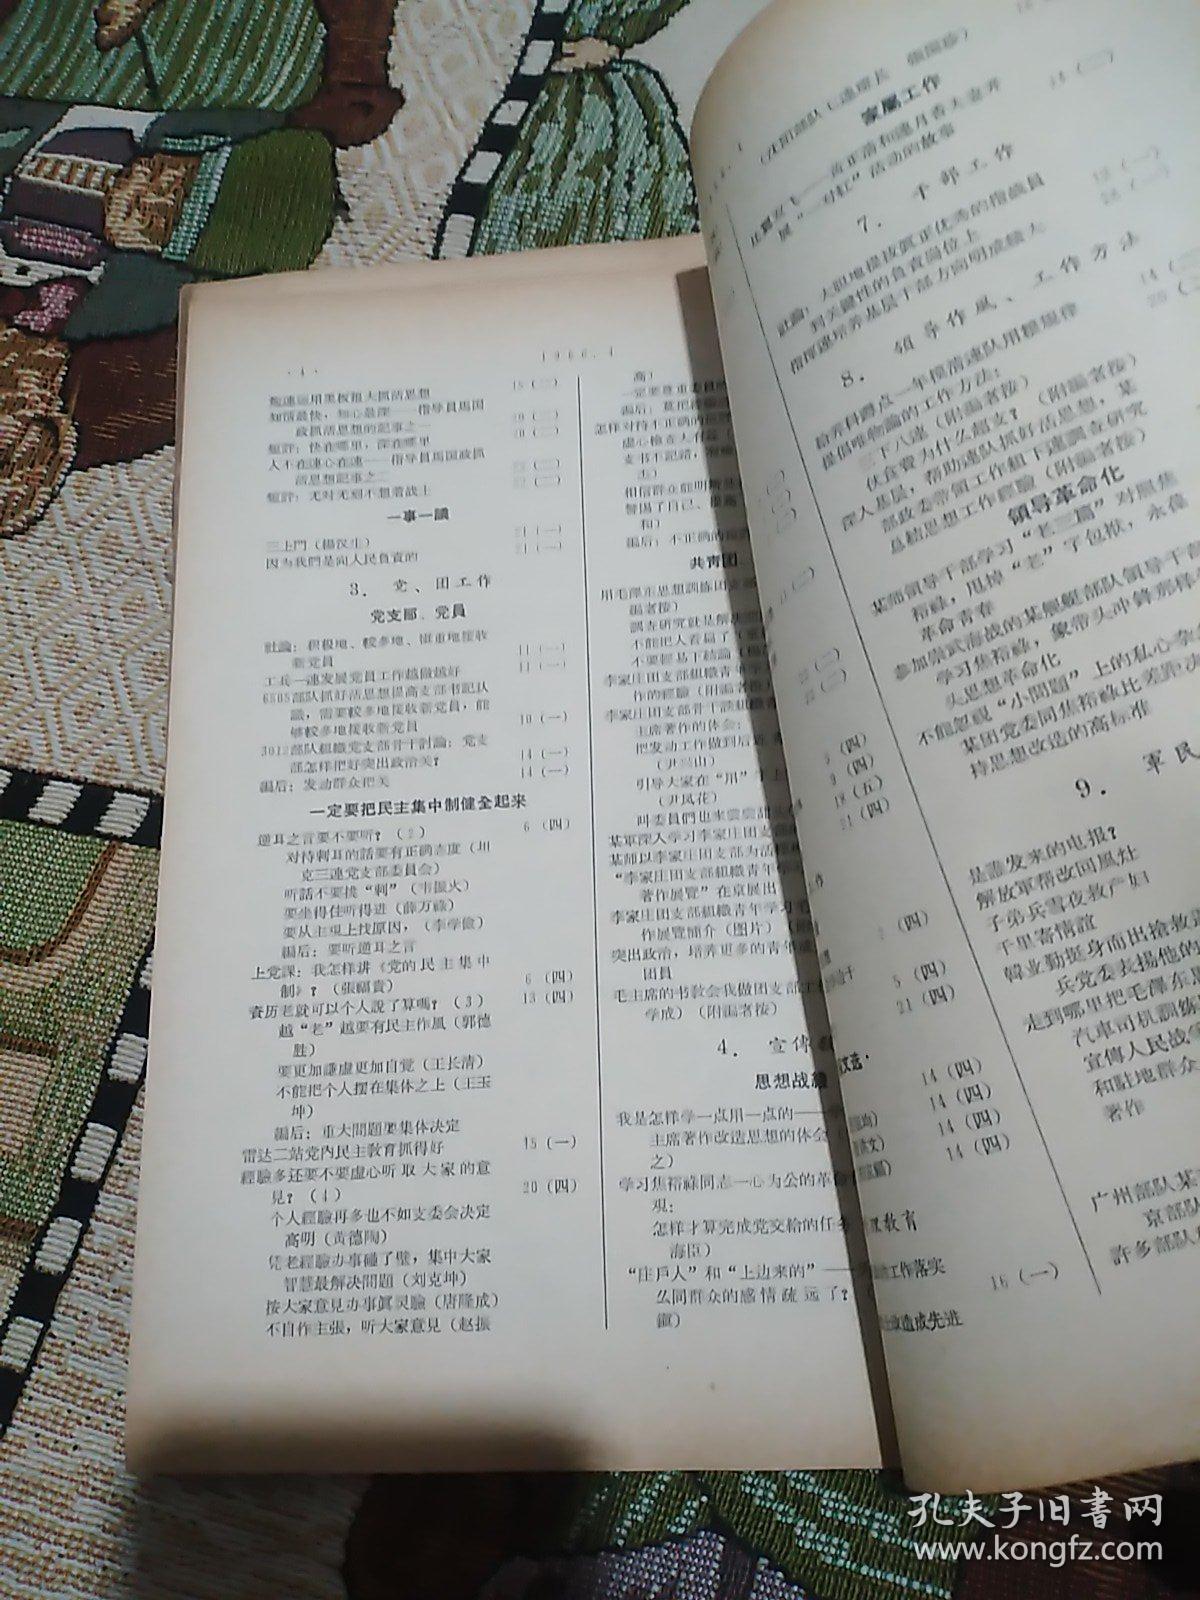 解放军报索引 1966年4月(共16页)